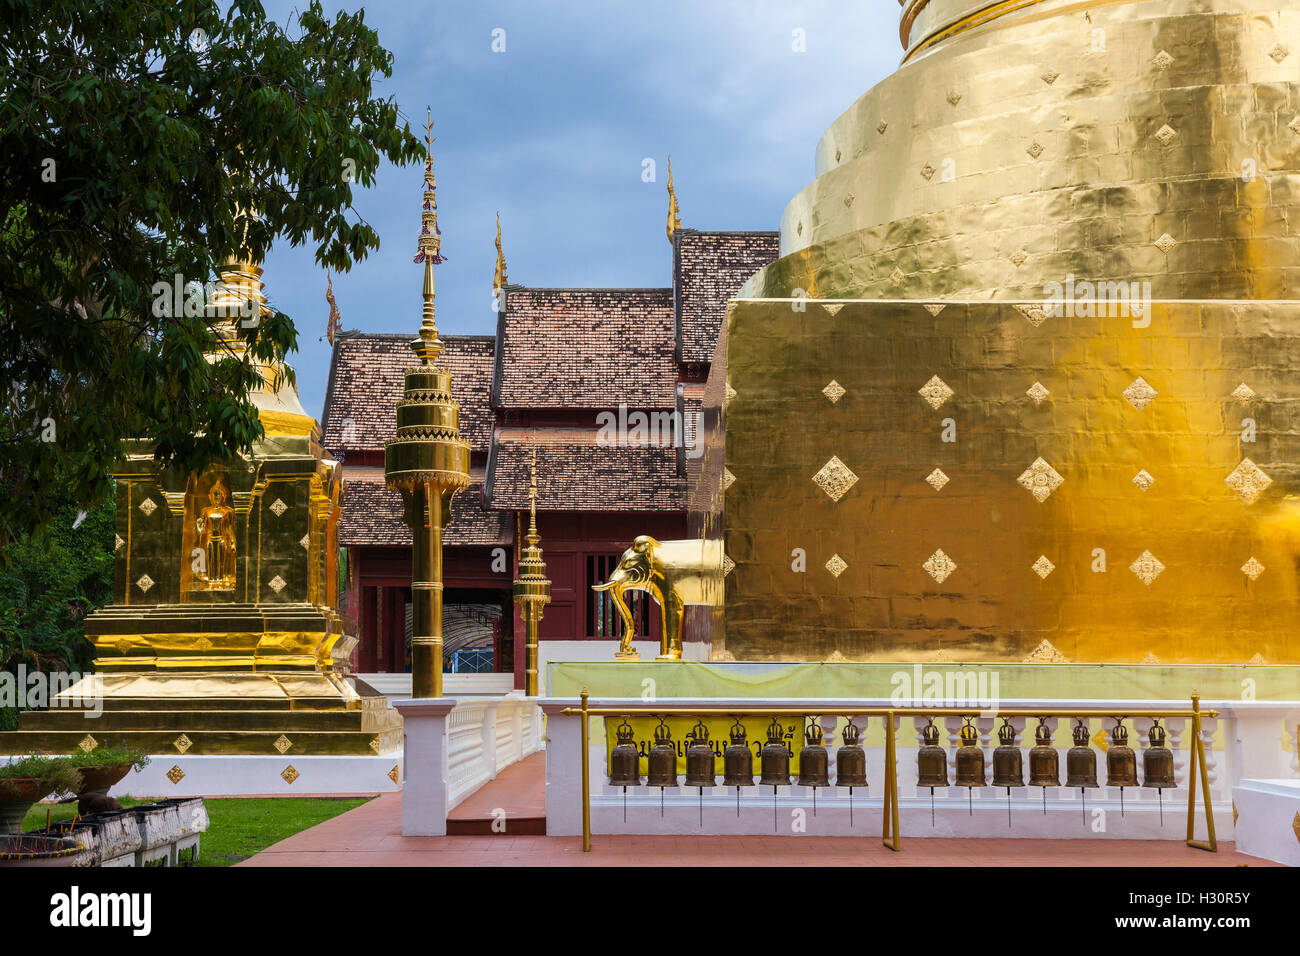 Ver el atardecer del templo Wat Phra Singh, el templo más venerado en Chiang Mai, Tailandia. Foto de stock